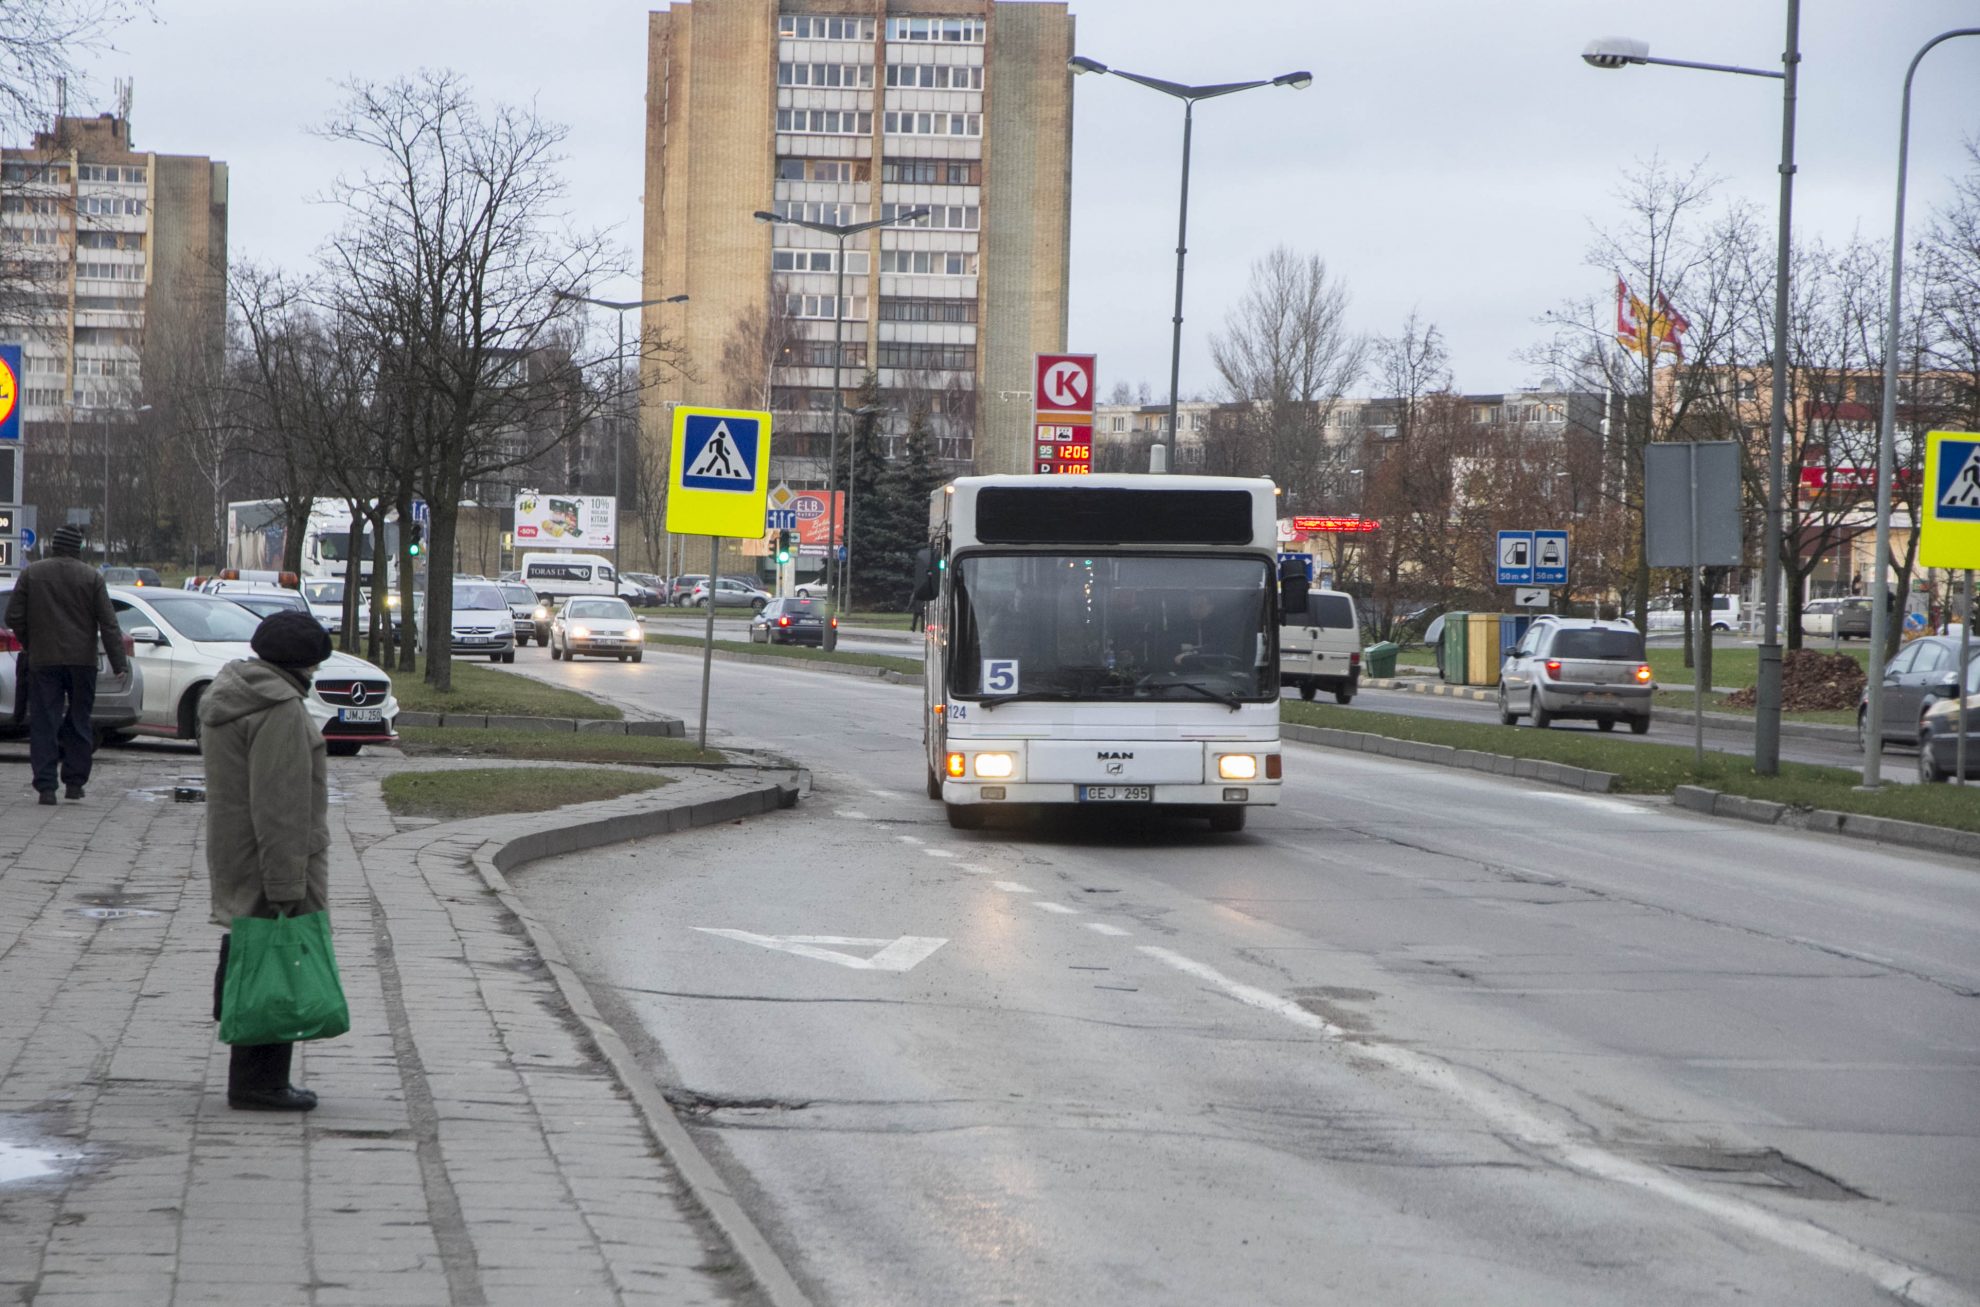 Panevėžio savivaldybė su Panevėžio autobusų parku įgyvendins viešojo transporto priemonių parko atnaujinimo projektą. Skaičiuojama, kad mieste atsiras 10 naujų, modernių, ekologiškų autobusų.